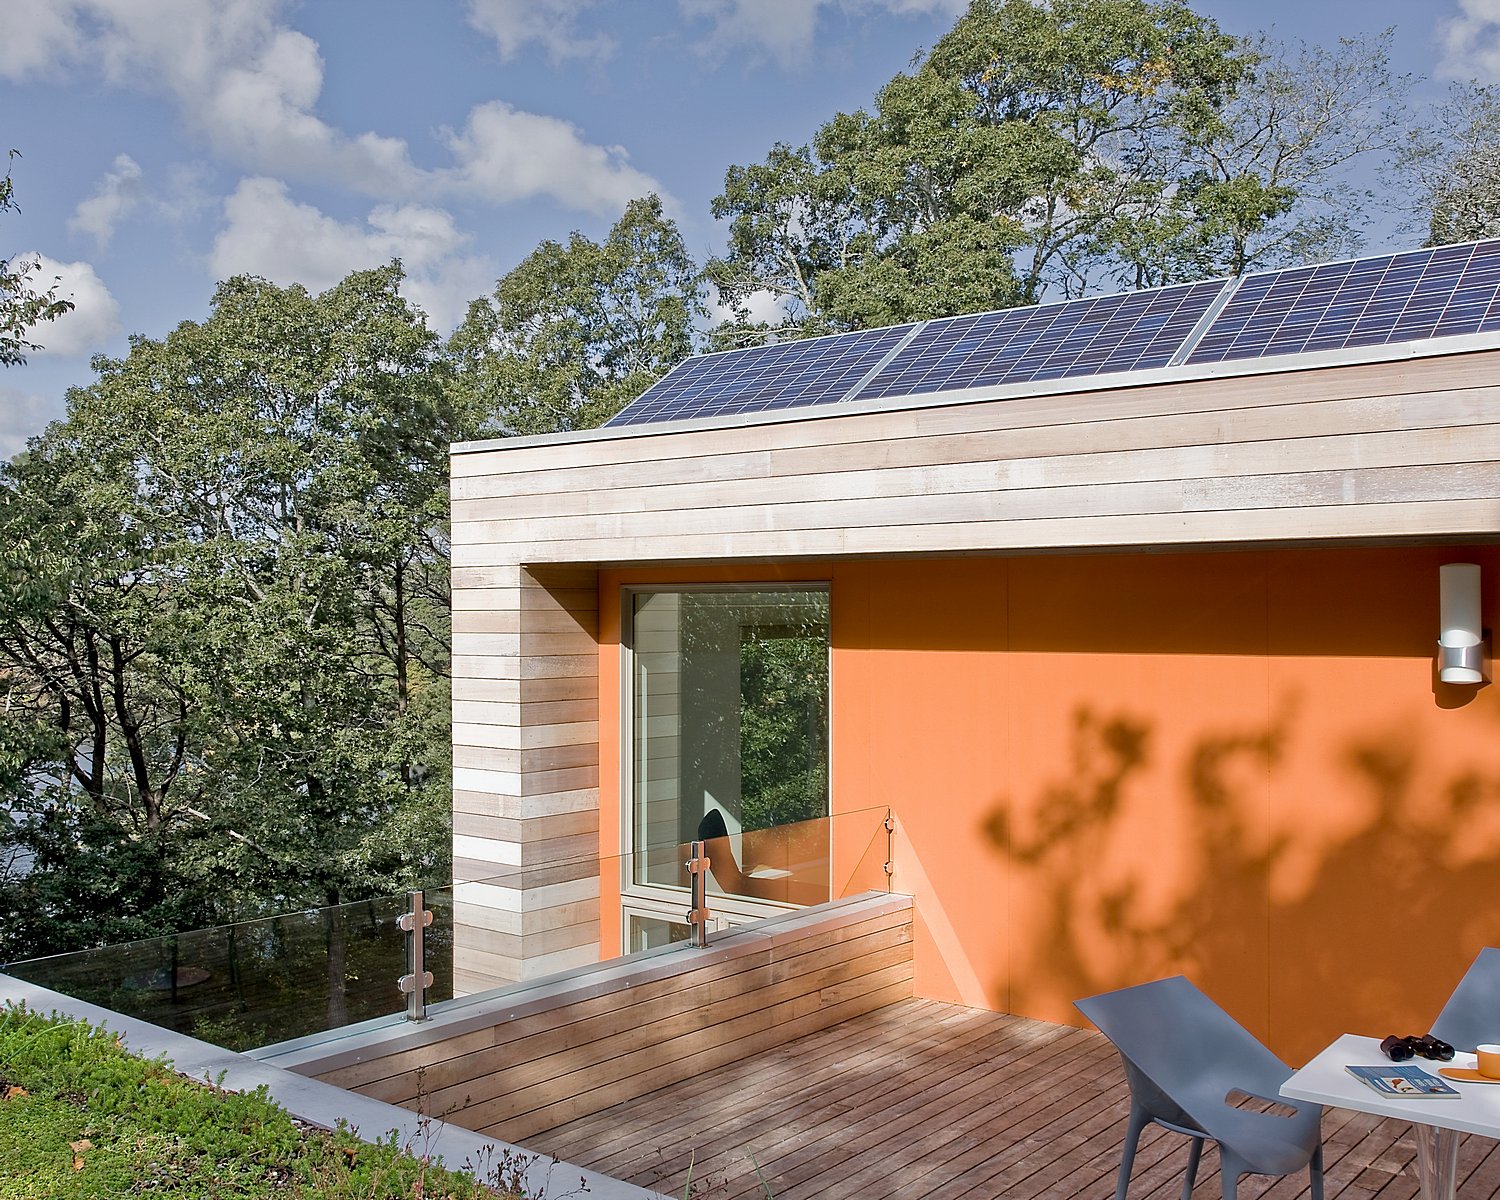 屋顶装有太阳能电池板的绿色家园